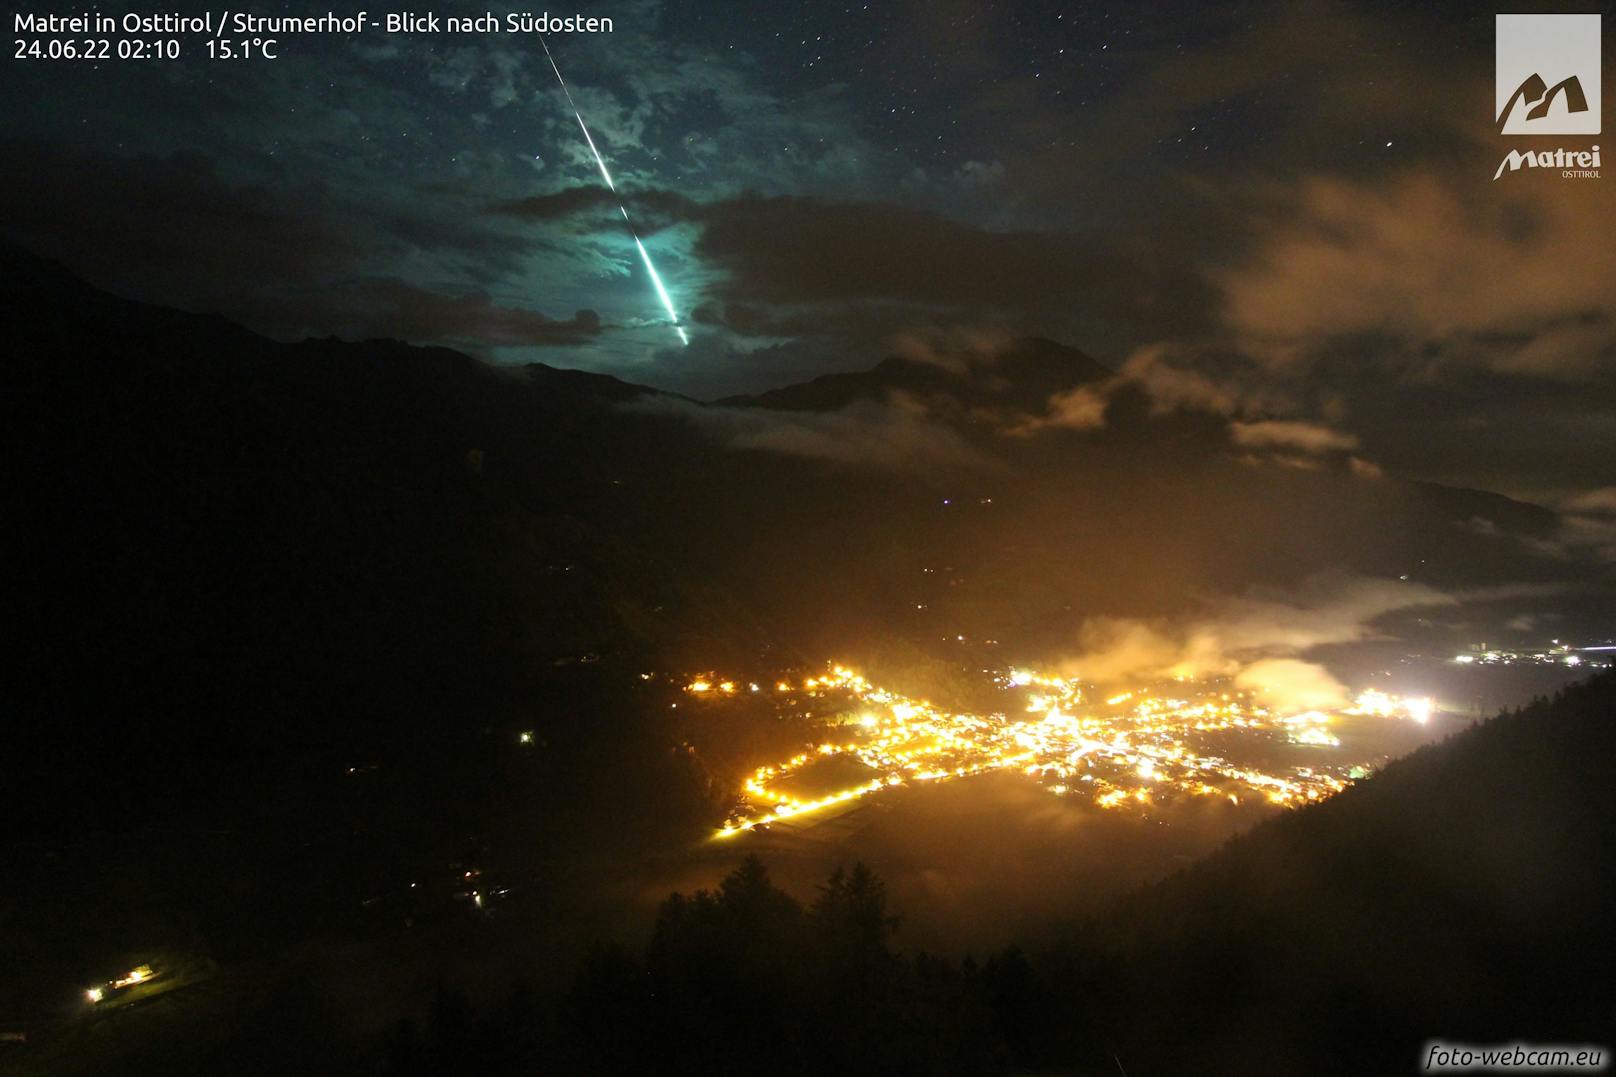 Außergewöhnliches Naturschauspiel in Österreich! Wetter-Experten ist die spektakuläre Aufnahme einer Feuerkugel am Himmel gelungen. Diese Foto wurde in Matrei in Osttirol geknipst.